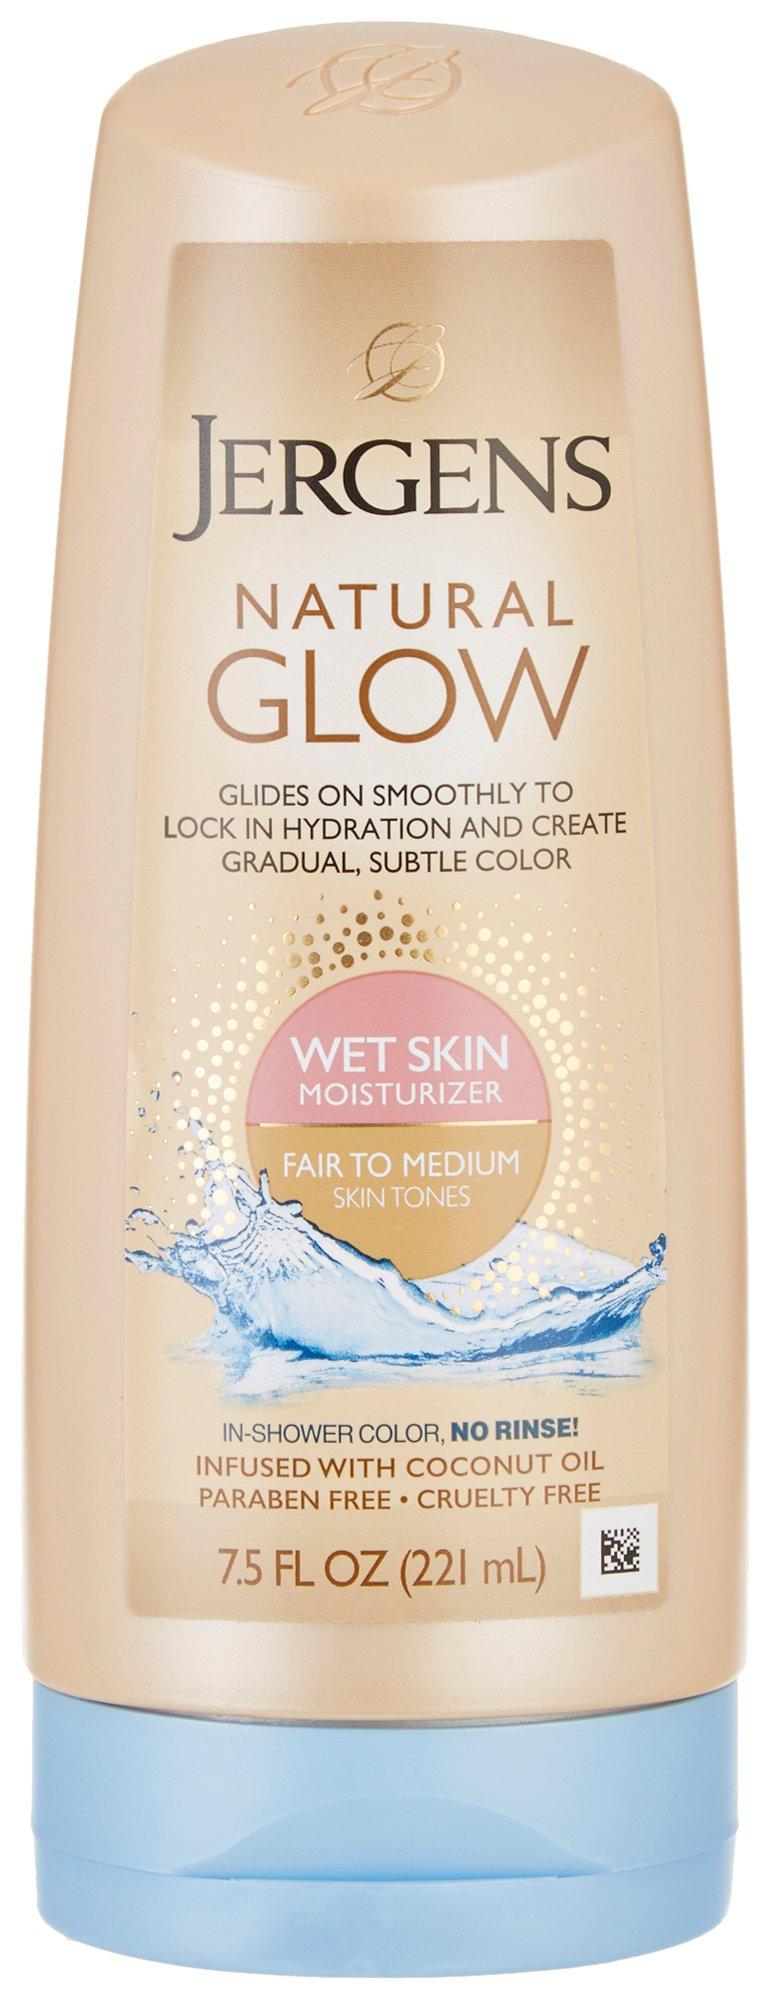 Jergens Natural Glow Fair To Medium Wet Skin Moisturizer